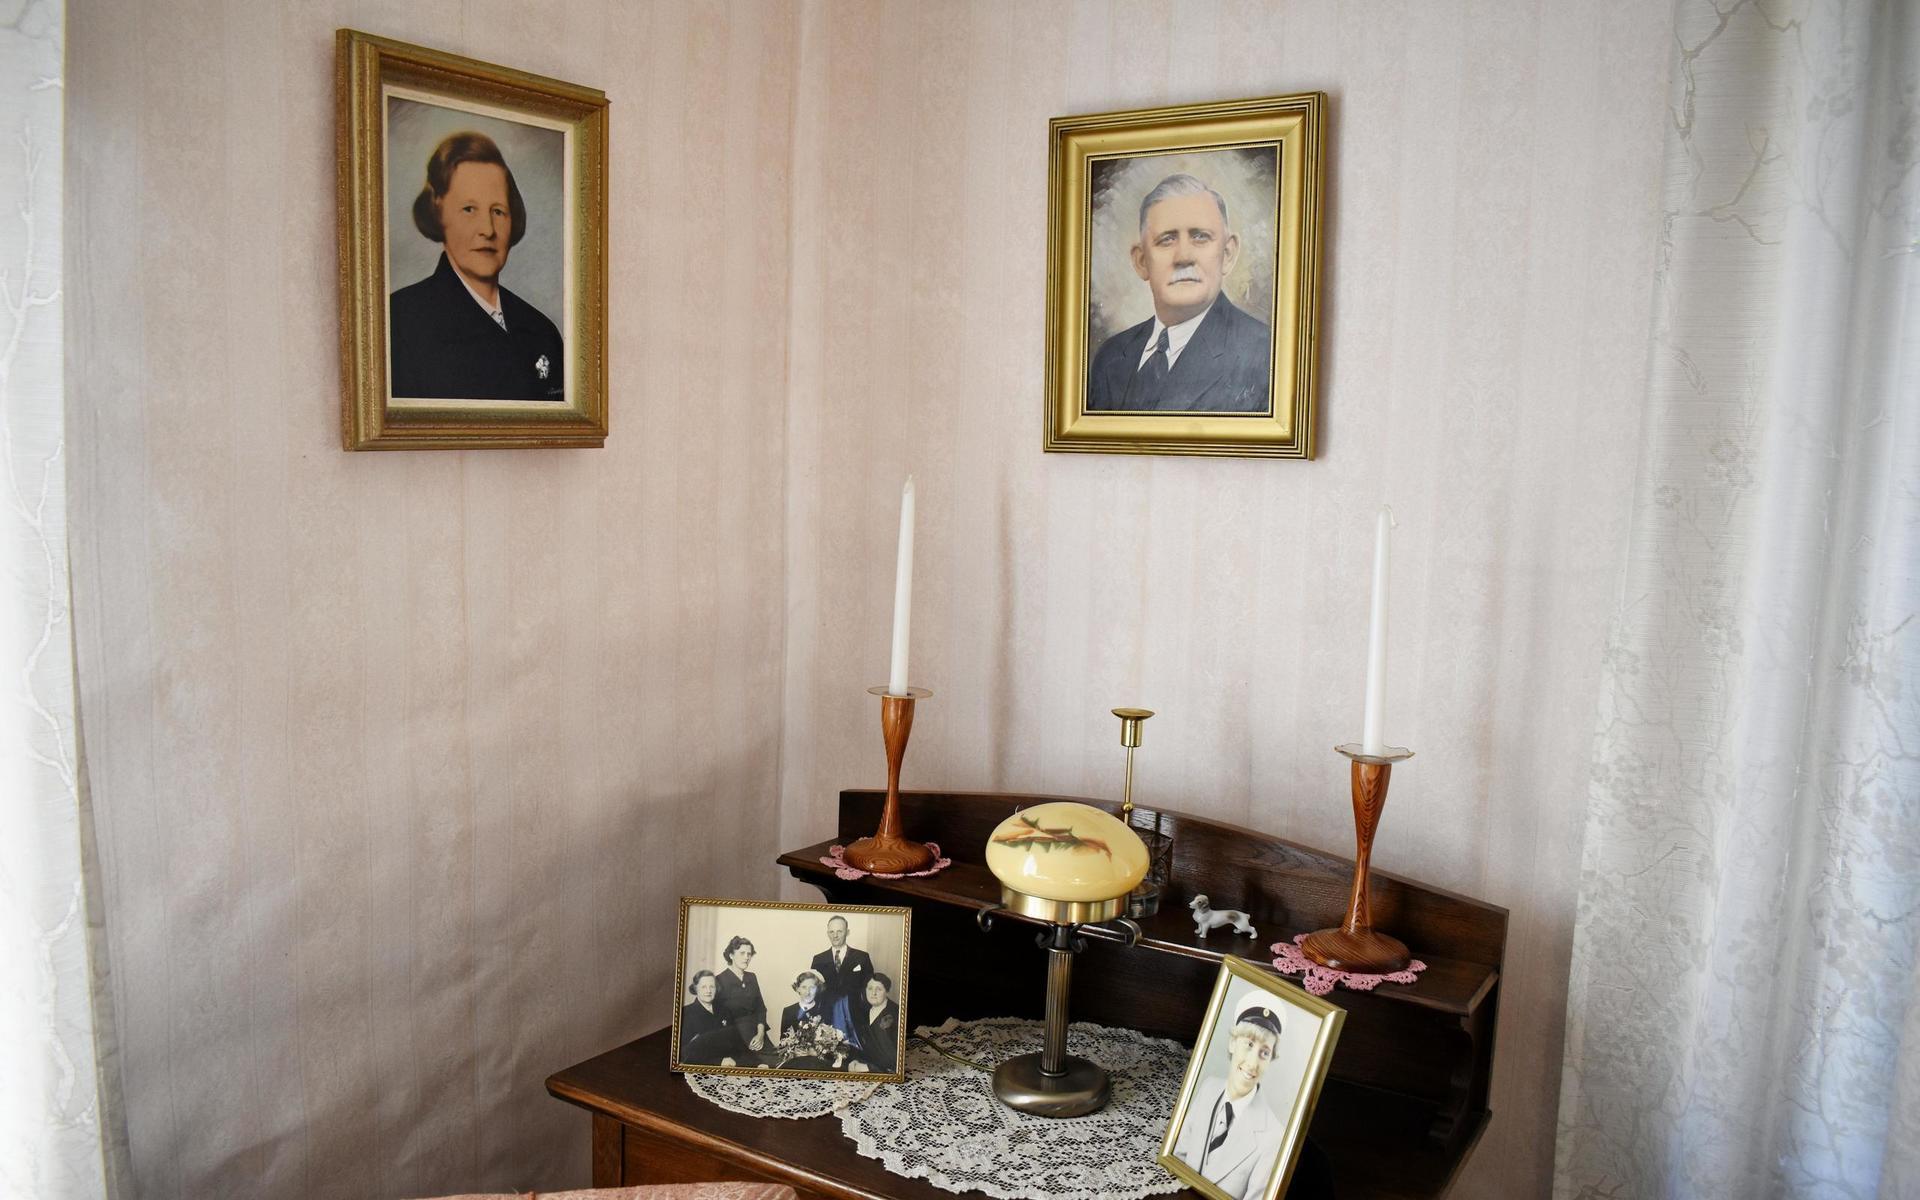 I finrummet hänger målade porträtt av husets ursprungliga ägare Hilma och Karl Pihl. Hilma levde som änka i huset i nästan 40 år efter att maken Karl hade gått bort i en hjärtinfarkt.